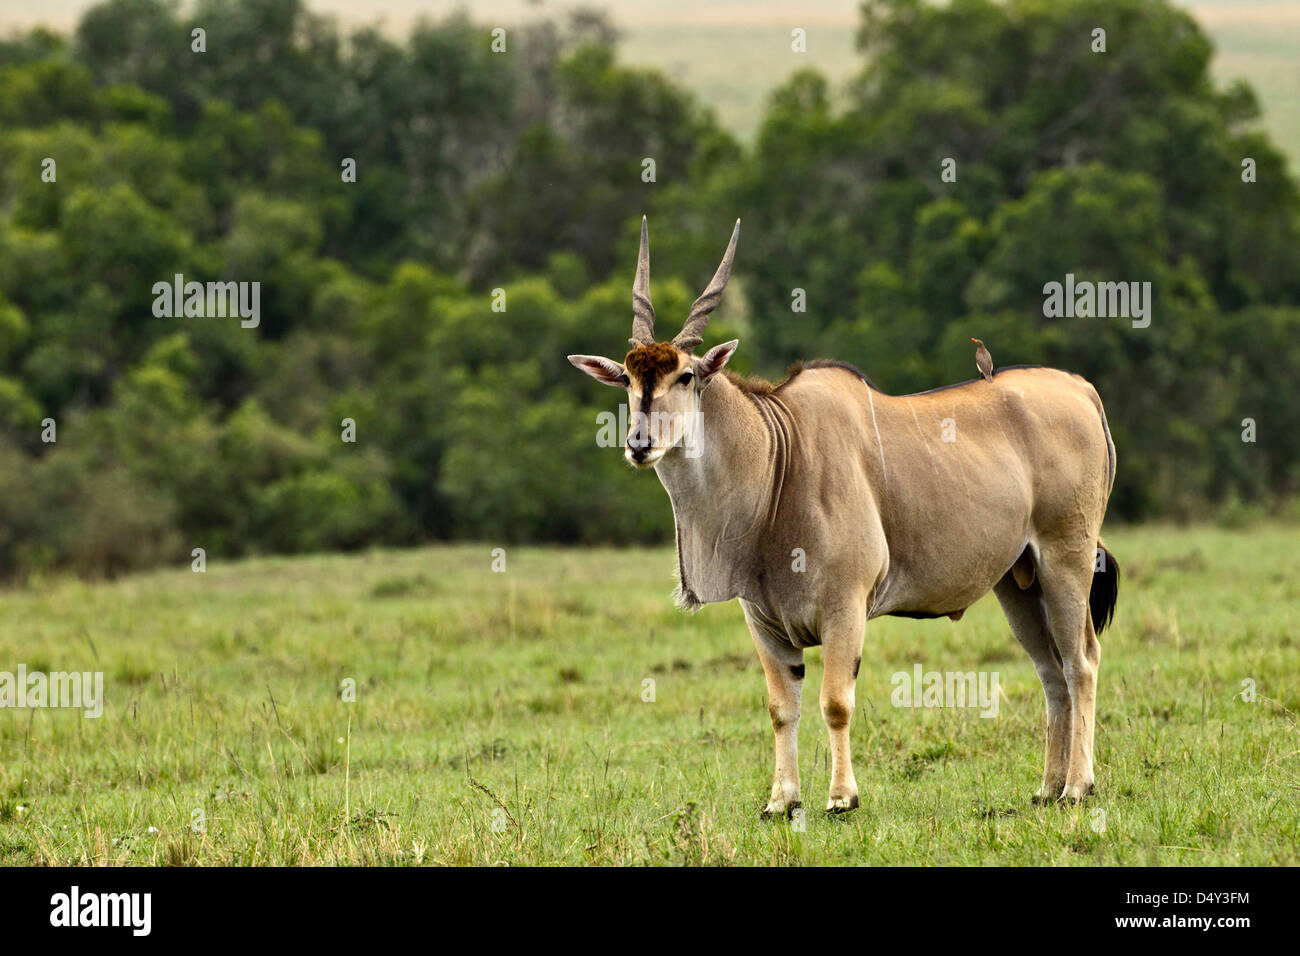 Eland (Taurotragus oryx) Kenya's largest antelope Stock Photo